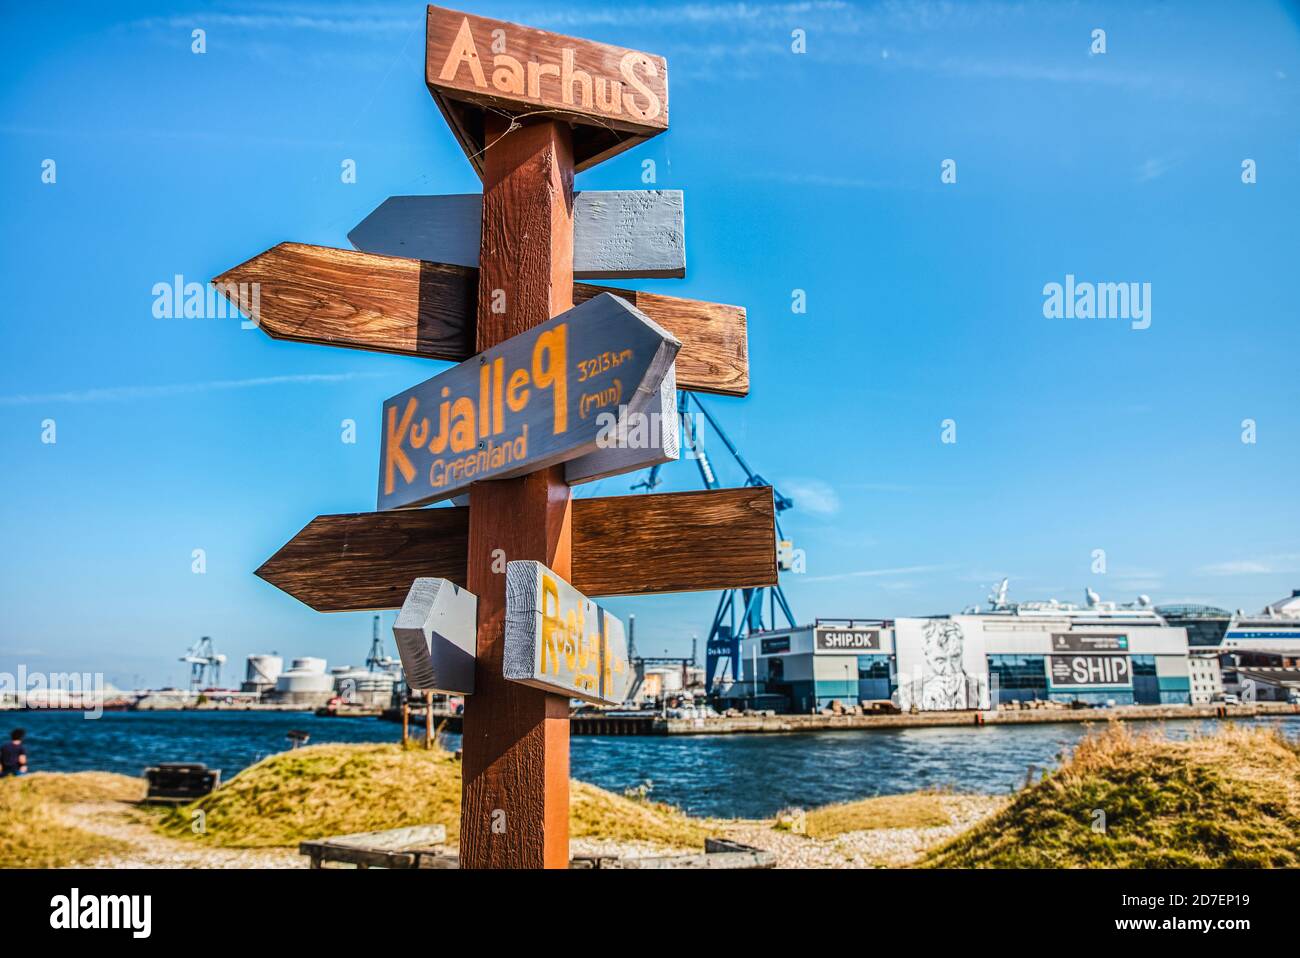 Im Hafen von Arhus weist ein hölzernes Wegweiser auf Orte hin, an denen ein Reisender ein Richtungskonzept vermitteln möchte. Stockfoto